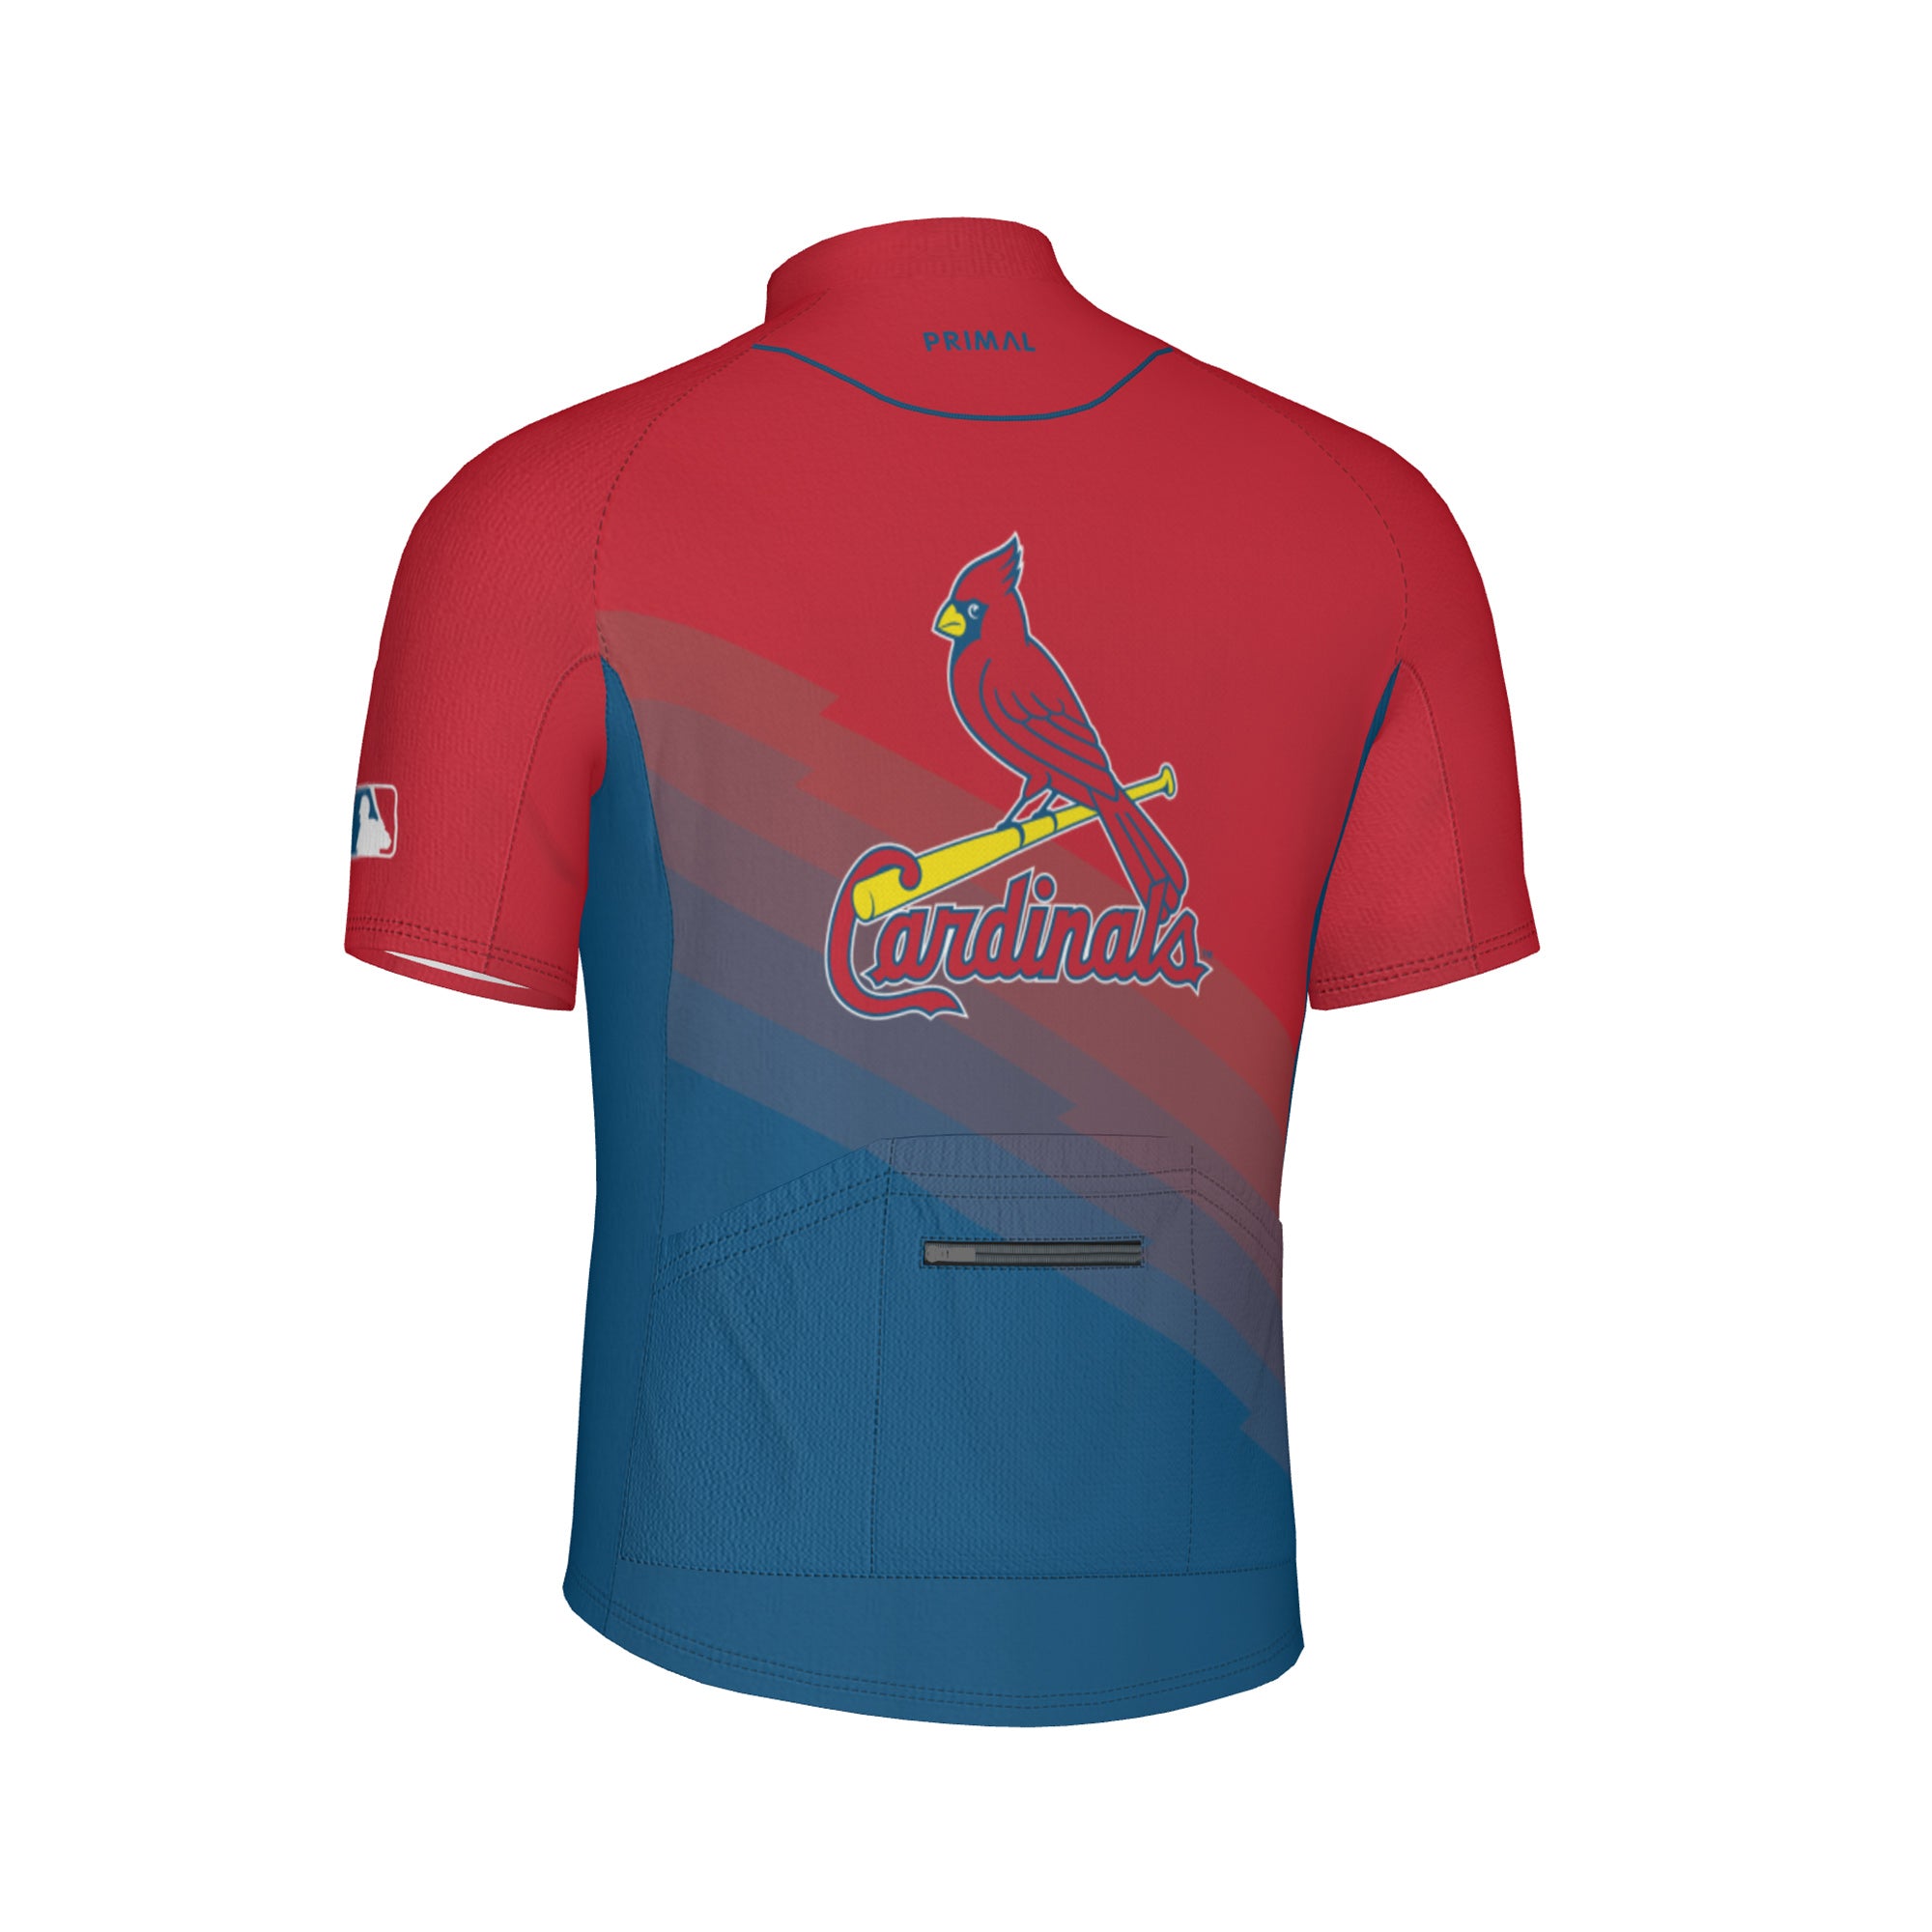 St. Louis Cardinals Home/Away Men's Sport Cut Jersey 3XL